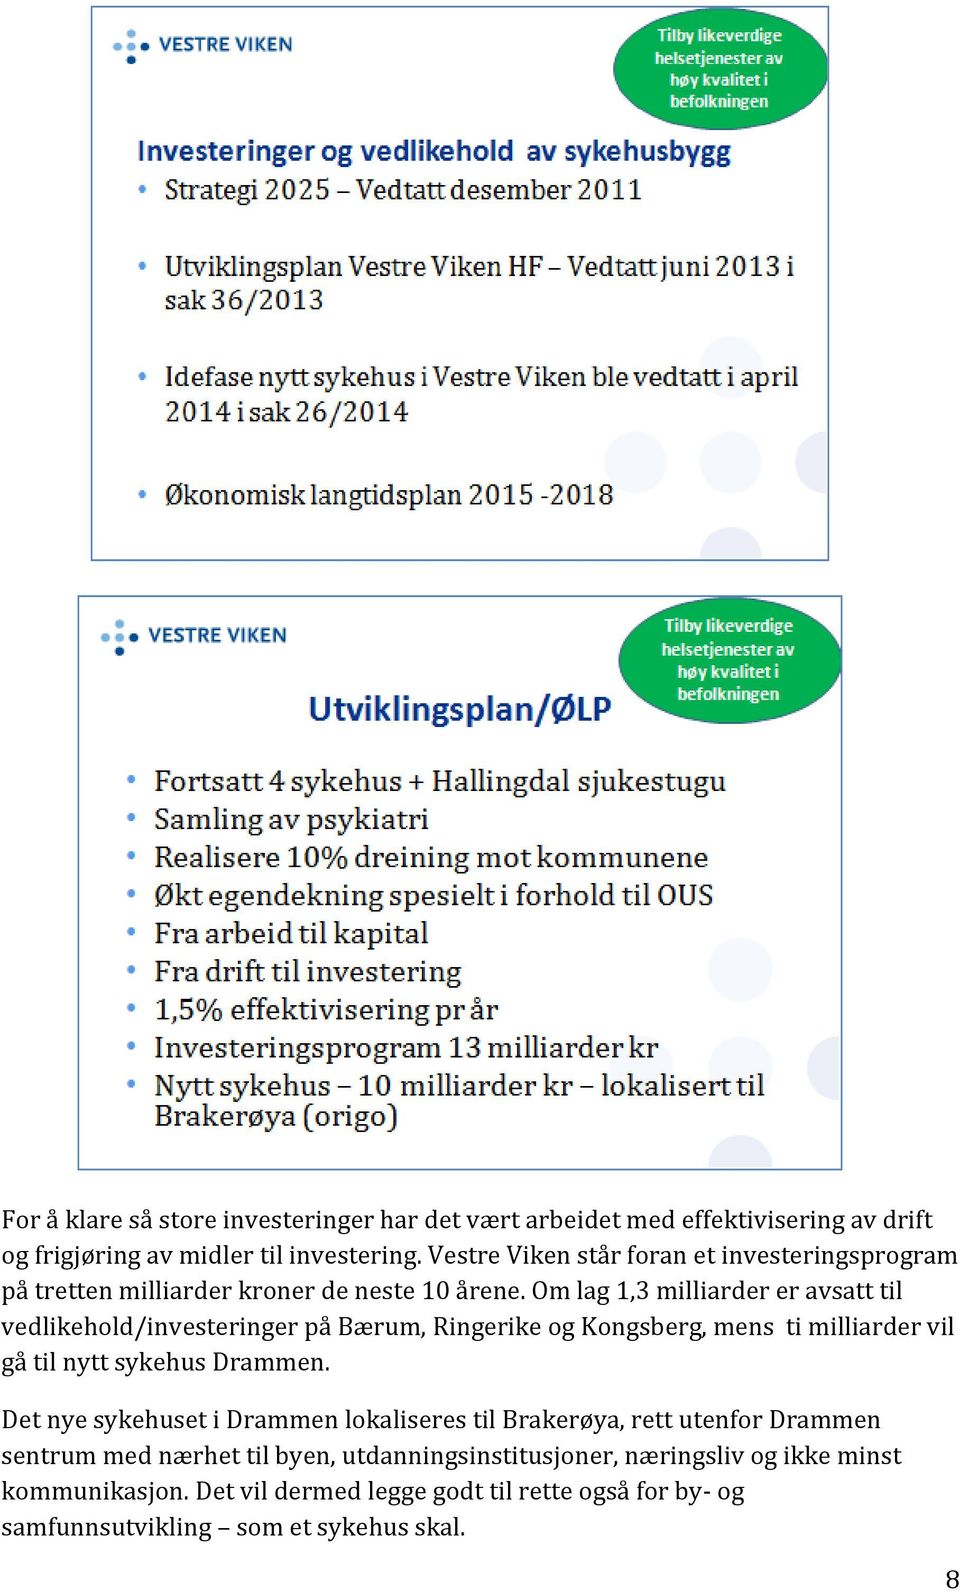 Om lag 1,3 milliarder er avsatt til vedlikehold/investeringer på Bærum, Ringerike og Kongsberg, mens ti milliarder vil gå til nytt sykehus Drammen.